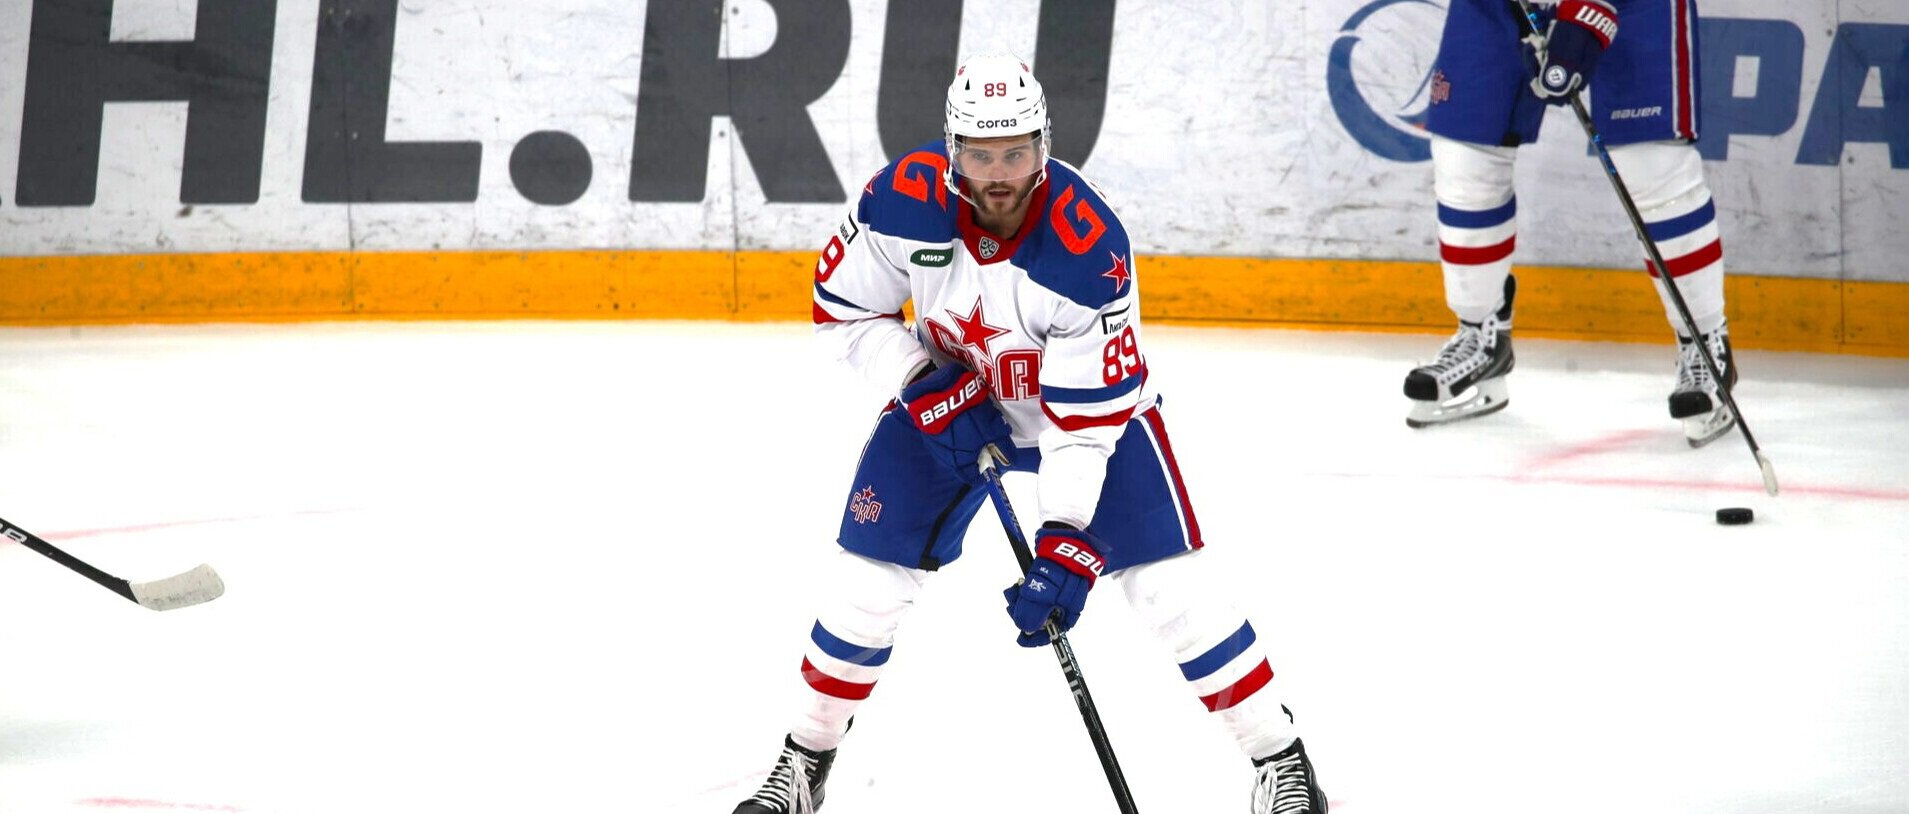 Никита Щитов: Гальченюк играл в НХЛ, а сейчас переходит из СКА в Амур, это шаг назад. Возможно, это часть сделки какой-то, нужно немного подождать